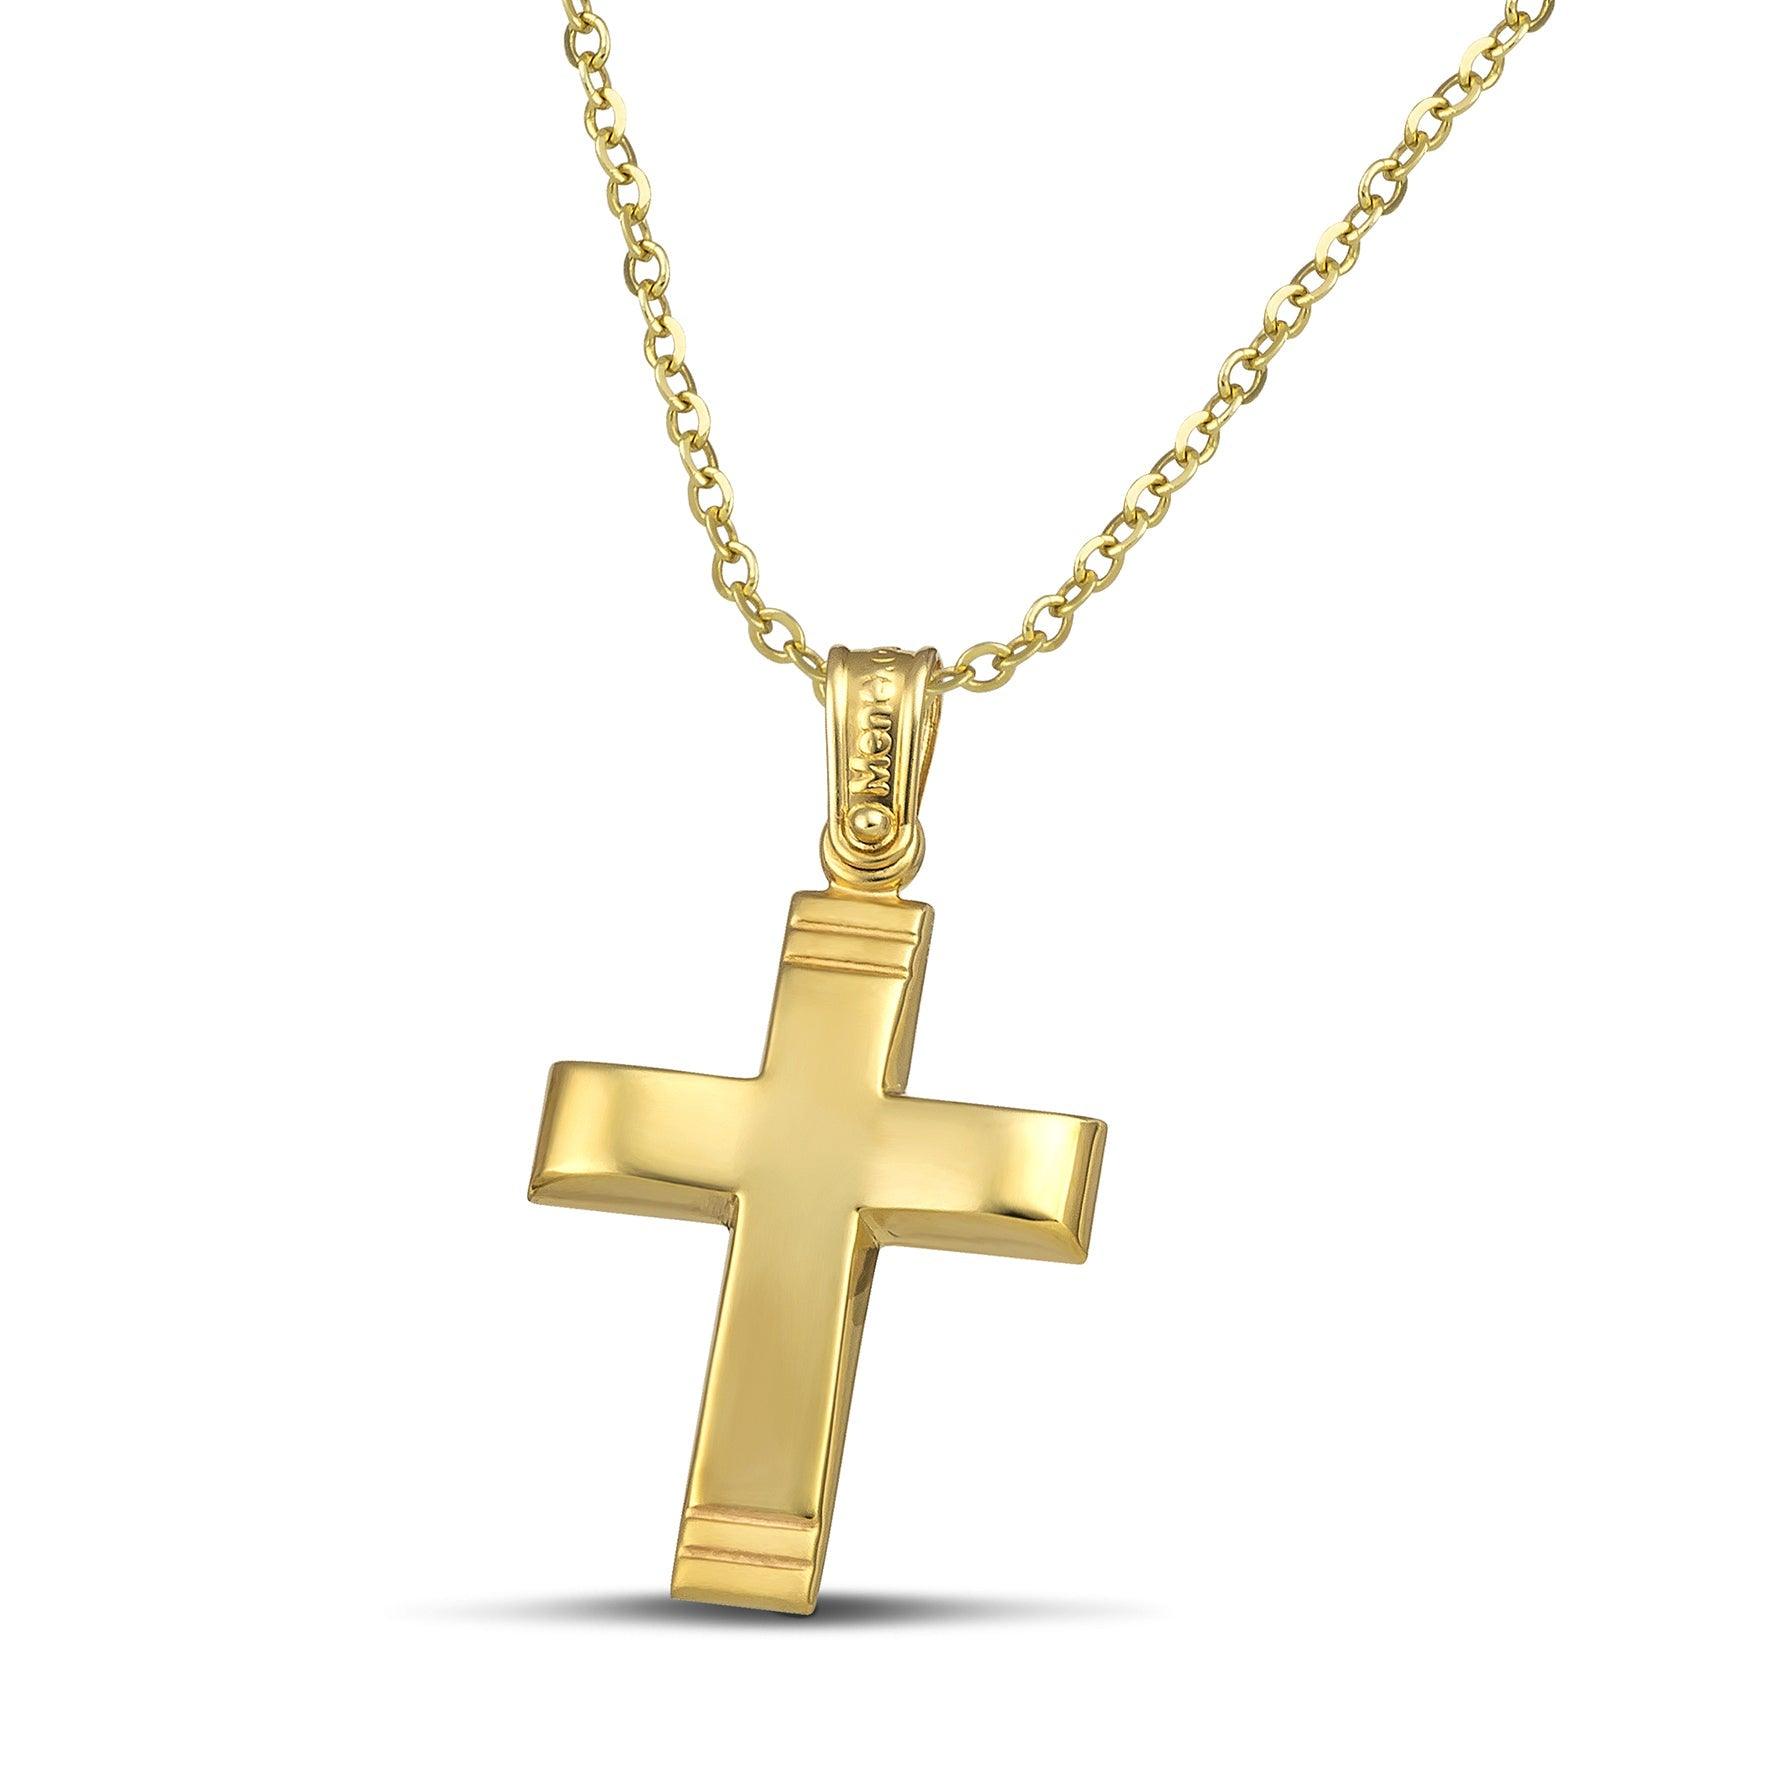 Χρυσός σταυρός 14 καρατίων με γυαλιστερή επιφάνεια. Γυναικείο  χειροποίητο κόσμημα, φορεμένο σε λεπτή αλυσίδα.